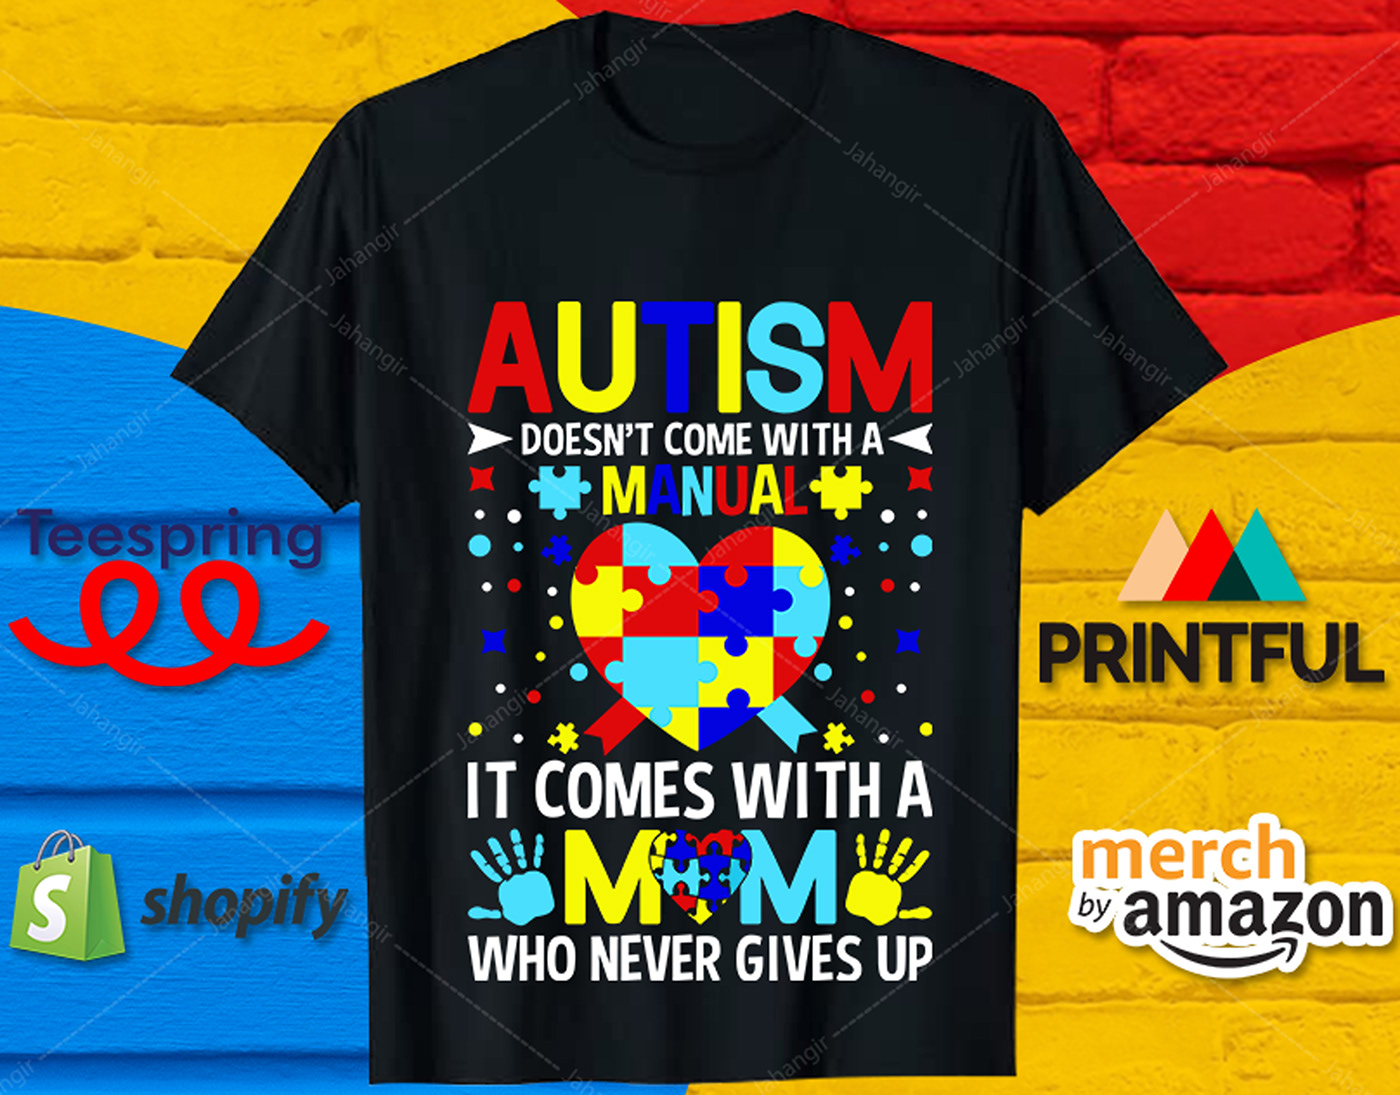 Autism awareness t-shirt Tshirt Design tshirts Tshirt design ideas tshirtdesign design tee shirt Autism T-shirt Design t-shirt bundle